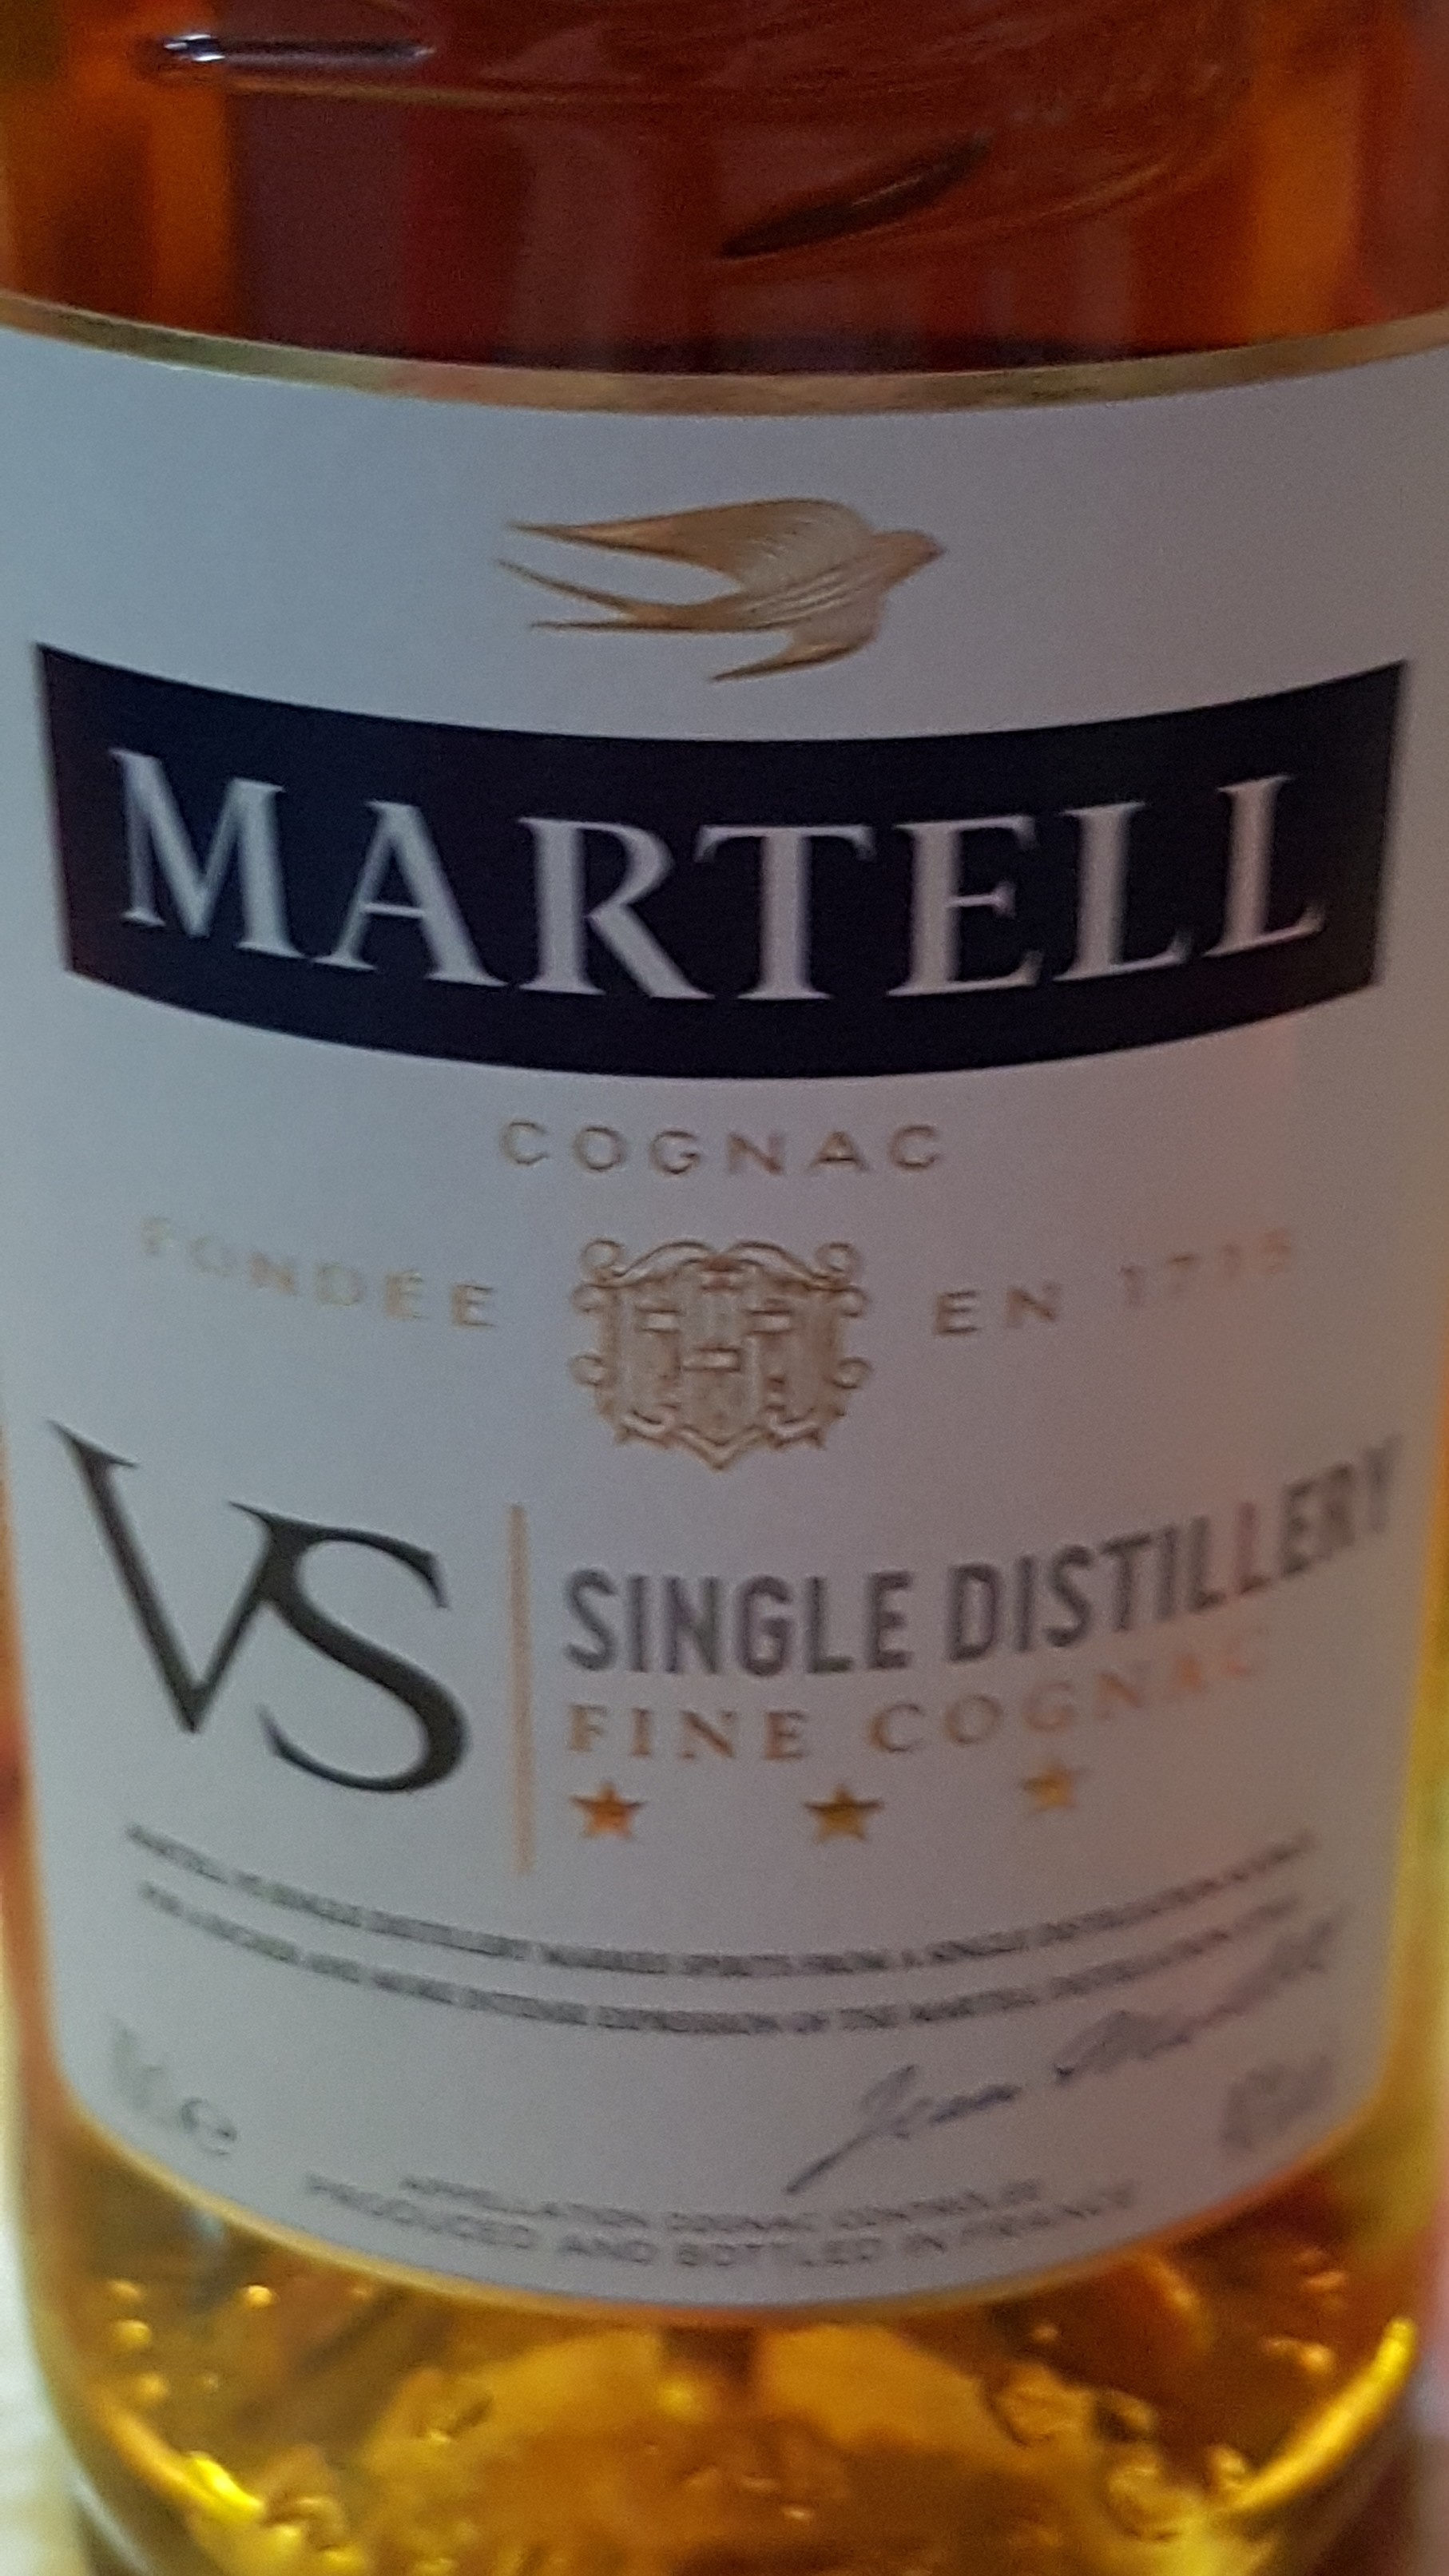 Martell Cognac - Ingrédients